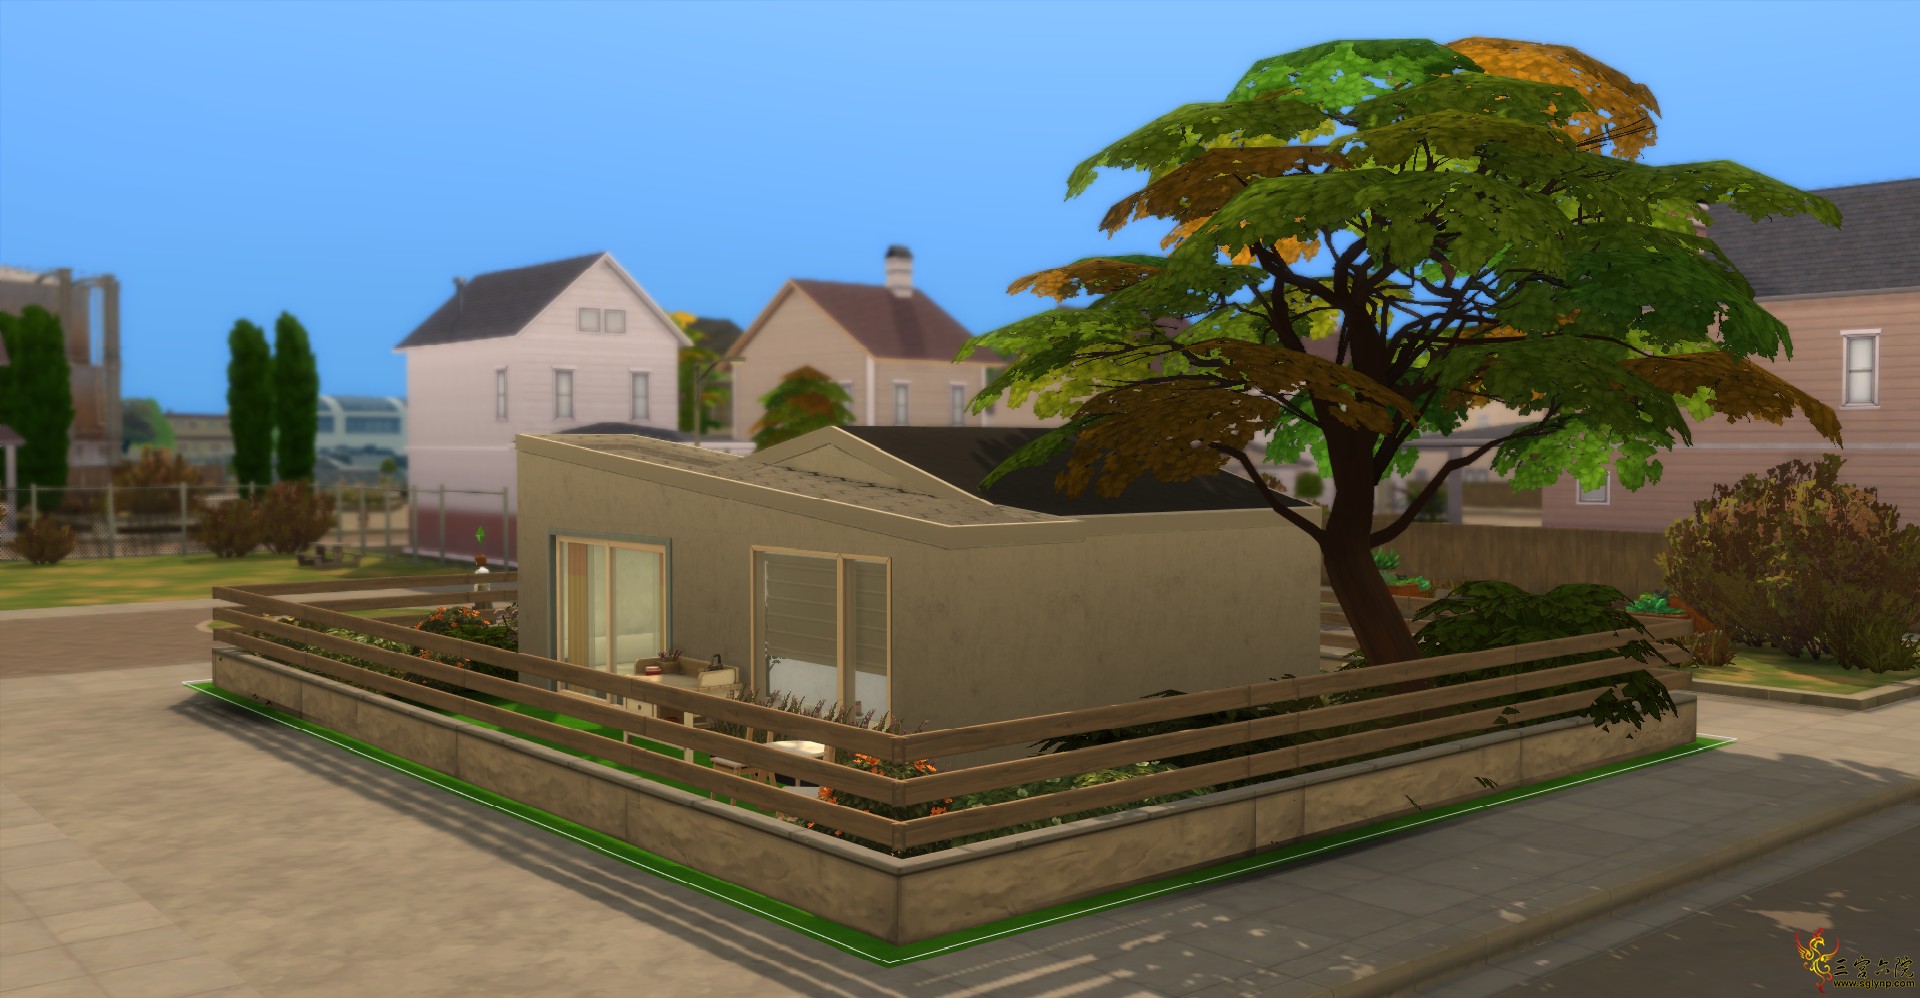 Sims 4 Screenshot 2021.05.10 - 19.10.55.44.png